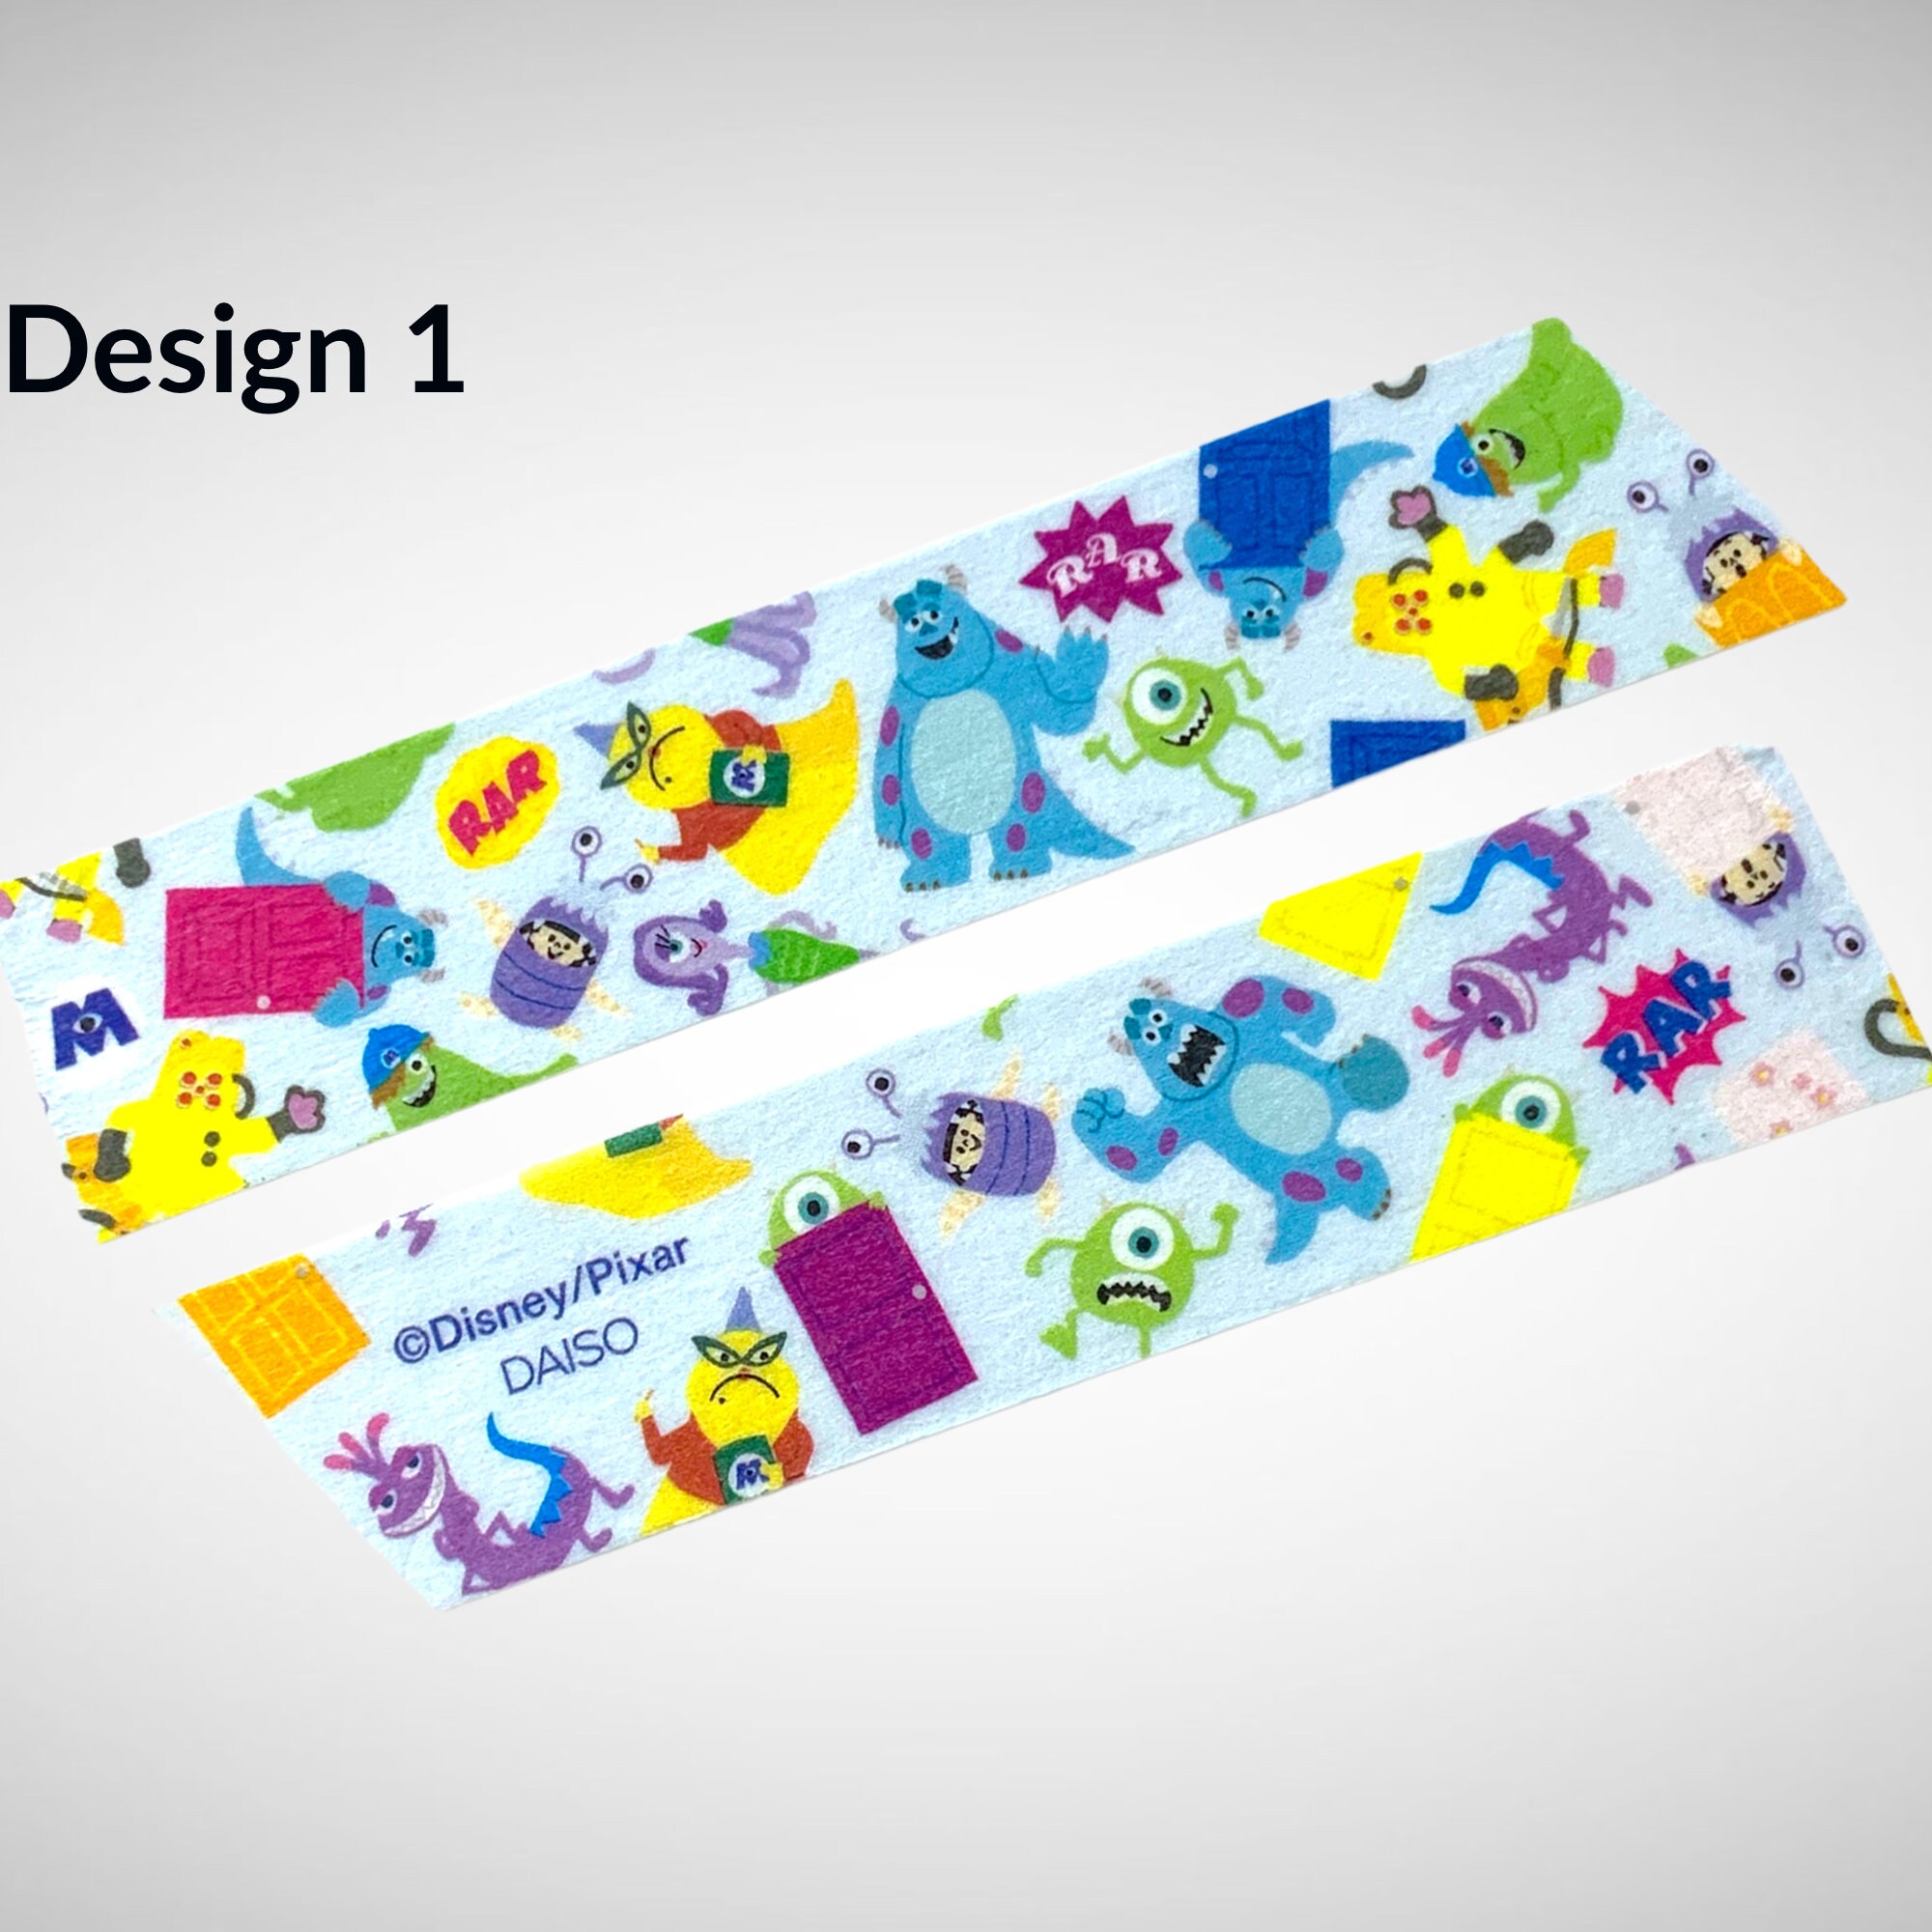 Disney Pixar Masking/washi Tape Washi Tape Full Roll Journals Planners  Scrapbooking Card Making 